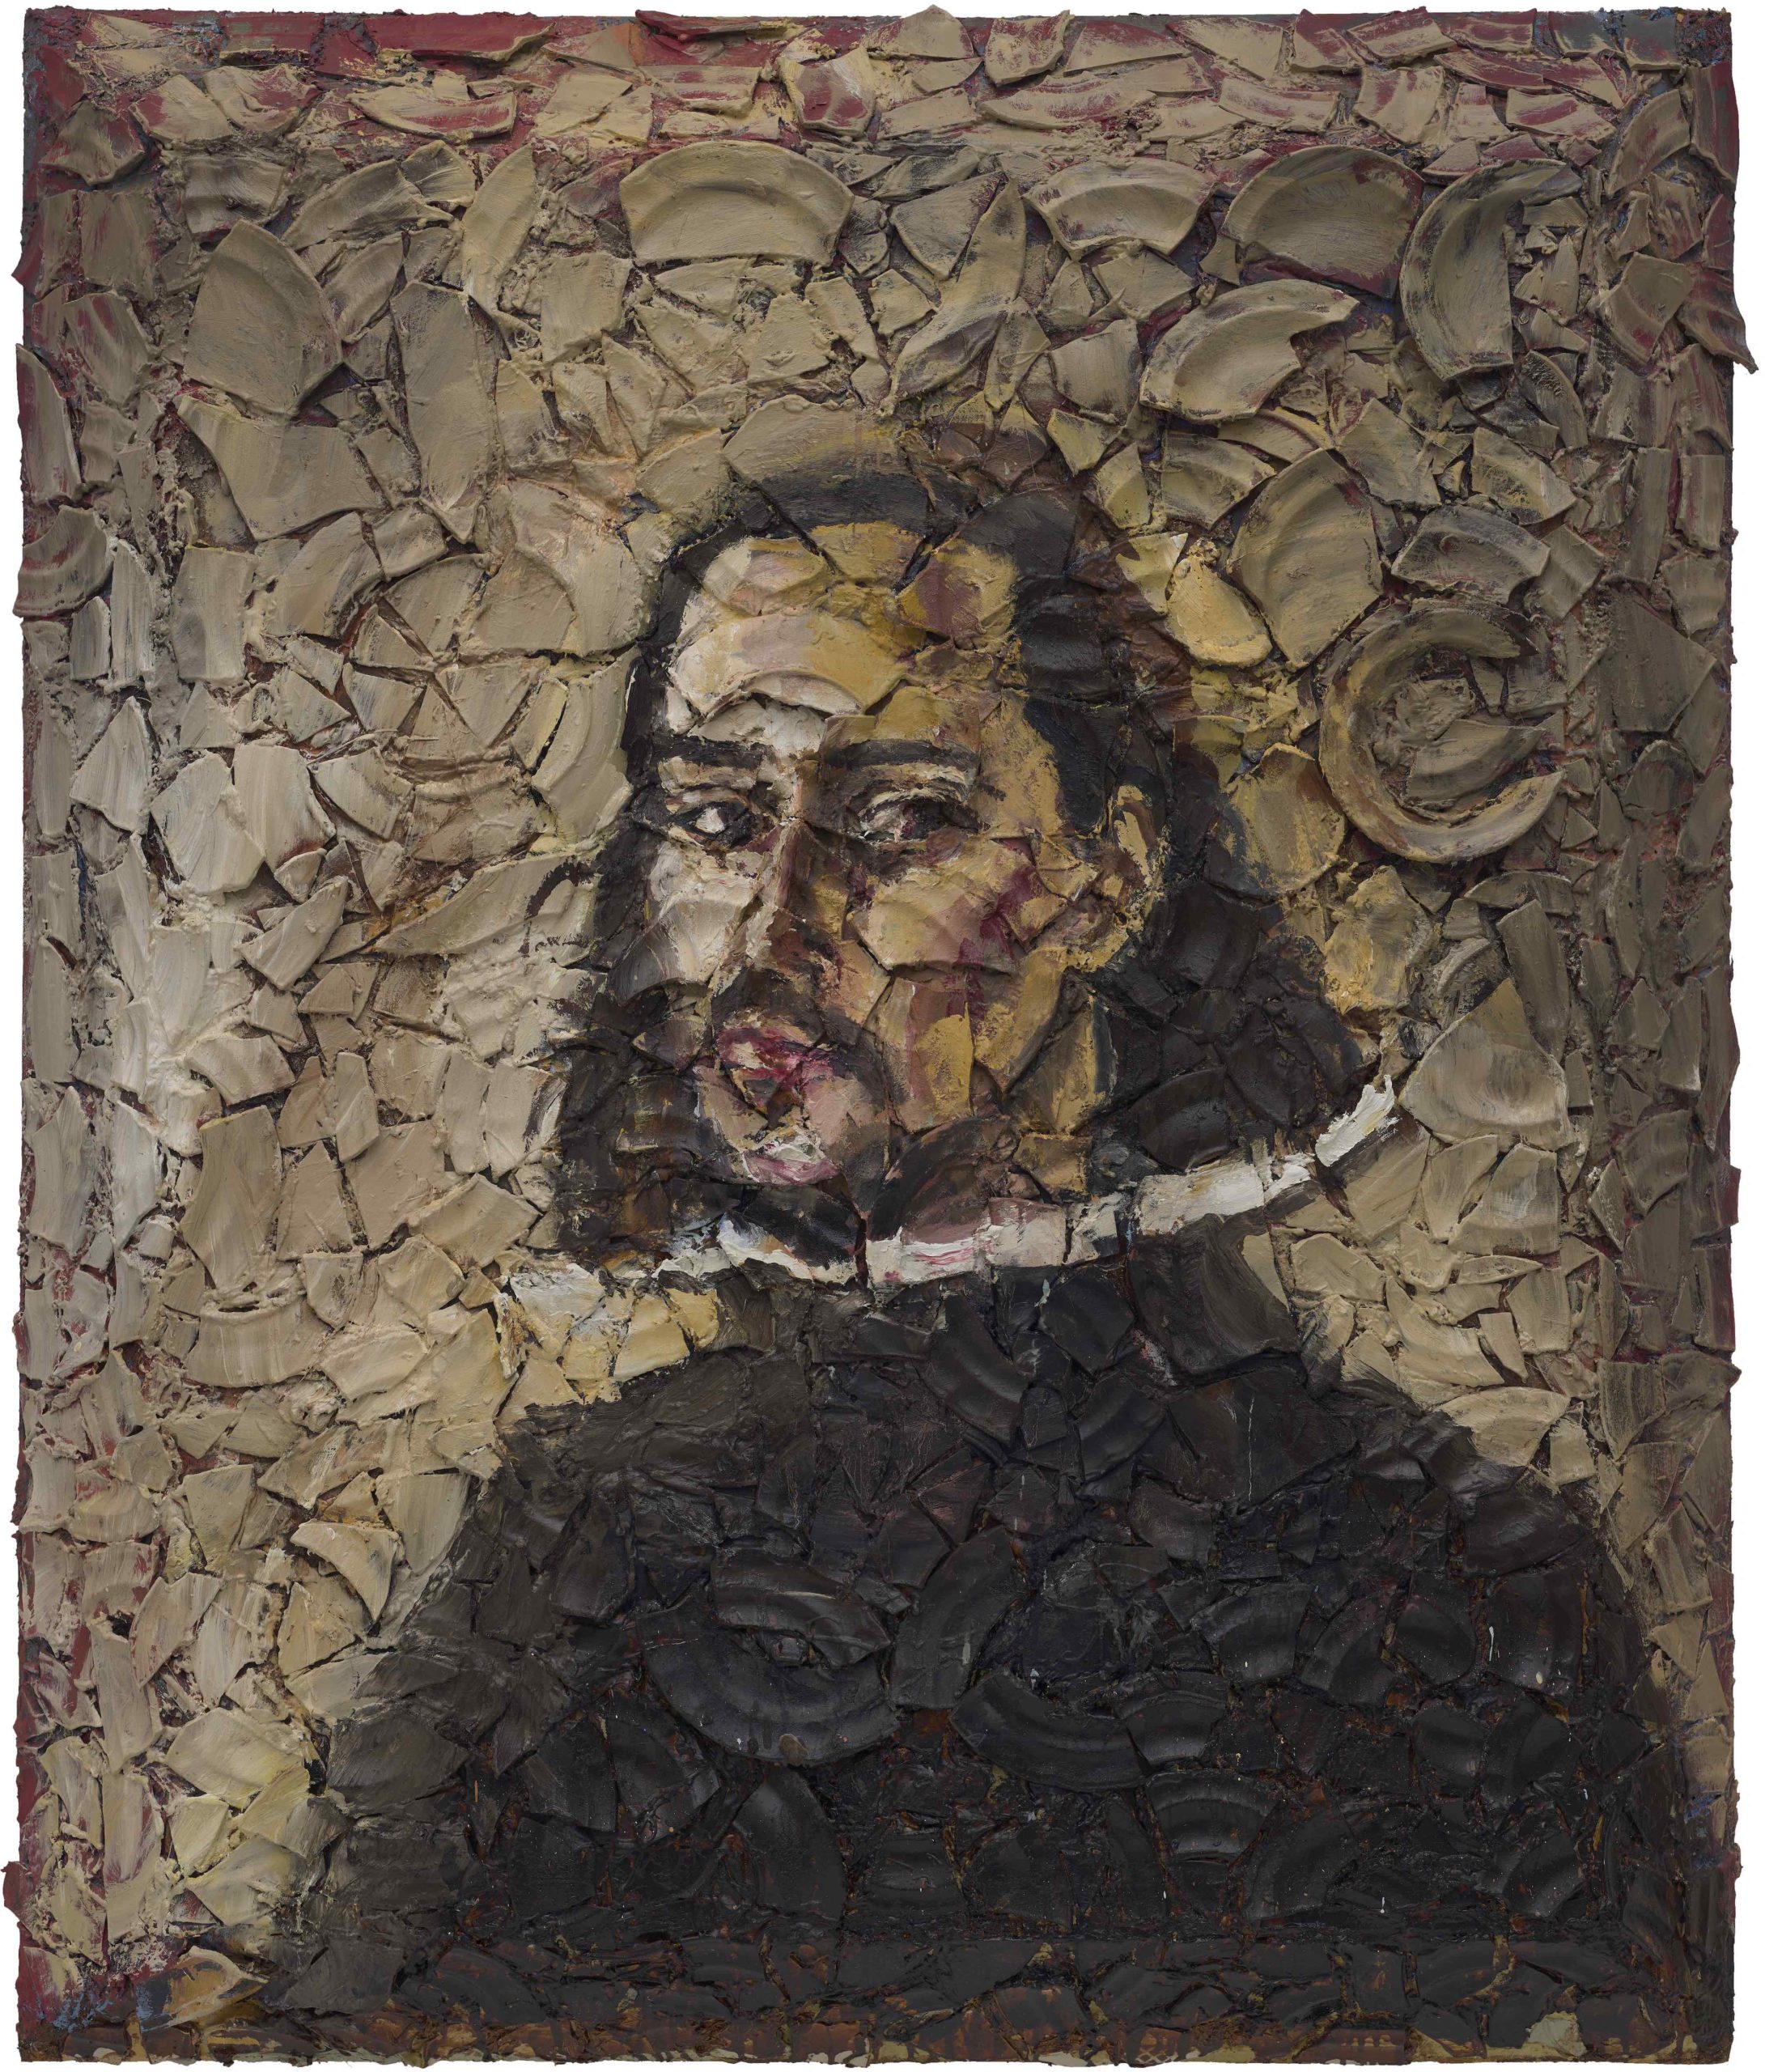 Number 1 (Velazquez Self-Portrait, Cy), 2019
